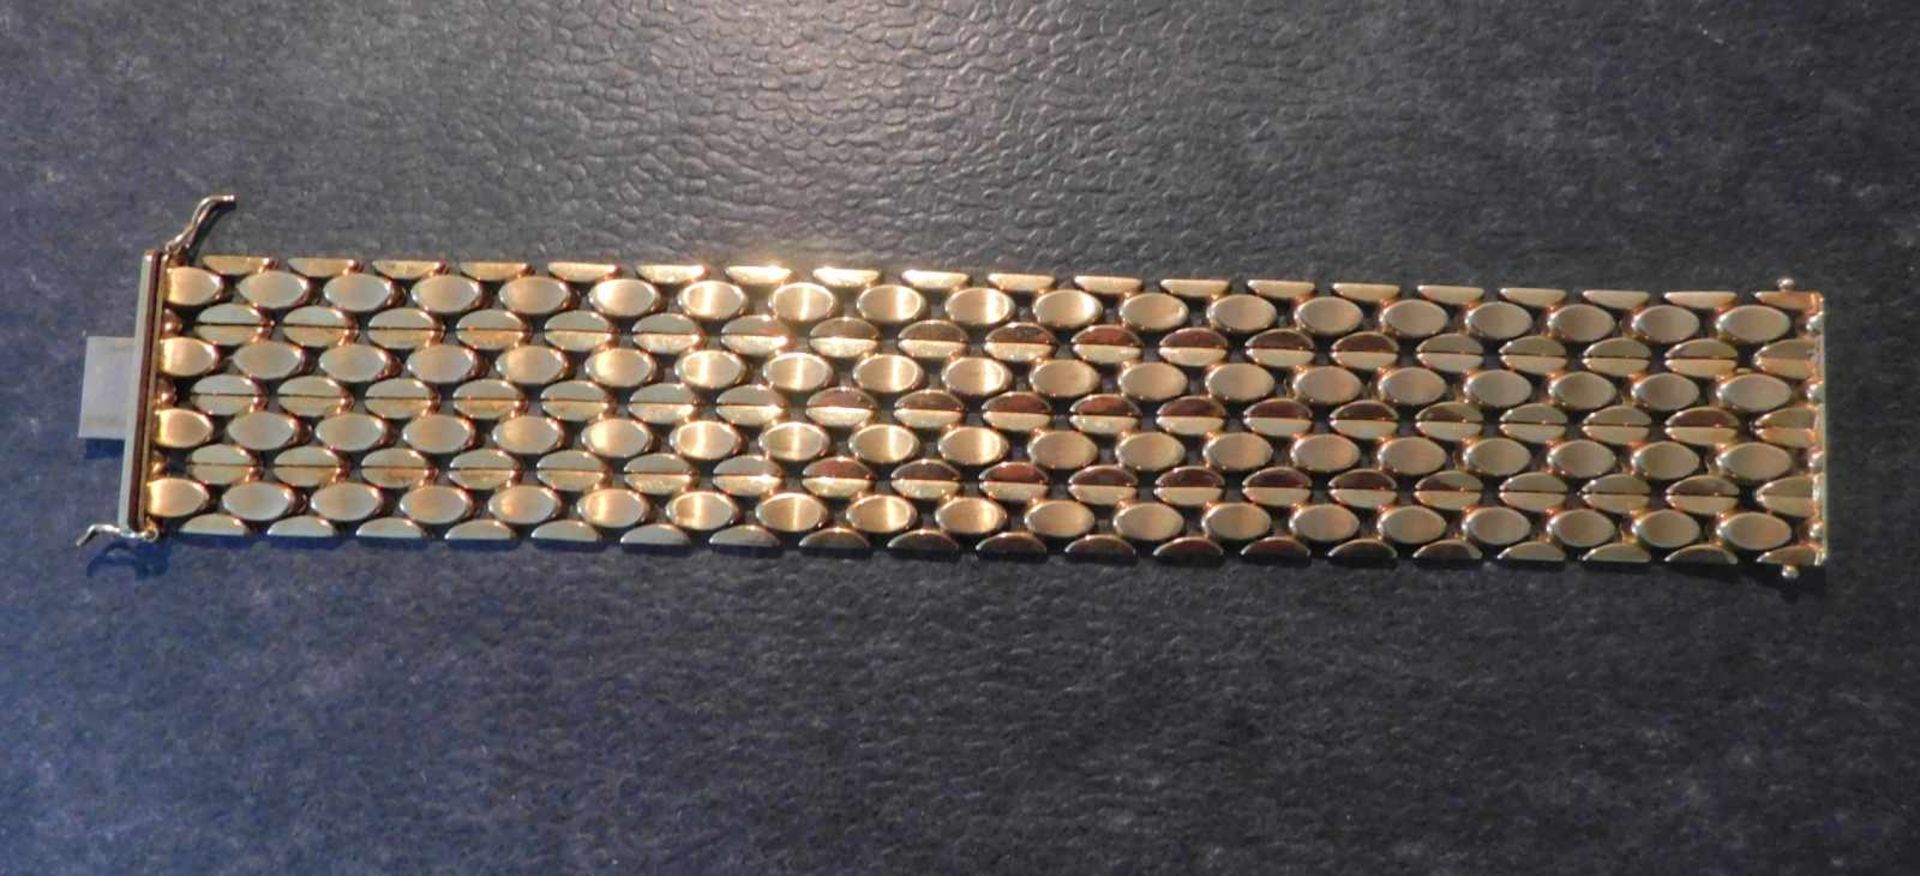 Armband, 585 Gelbgold, 3,5 cm breit, 50,2 g, Steckschloss mit 2 SicherheitsachtenLänge 19,7 cm, - Bild 3 aus 5